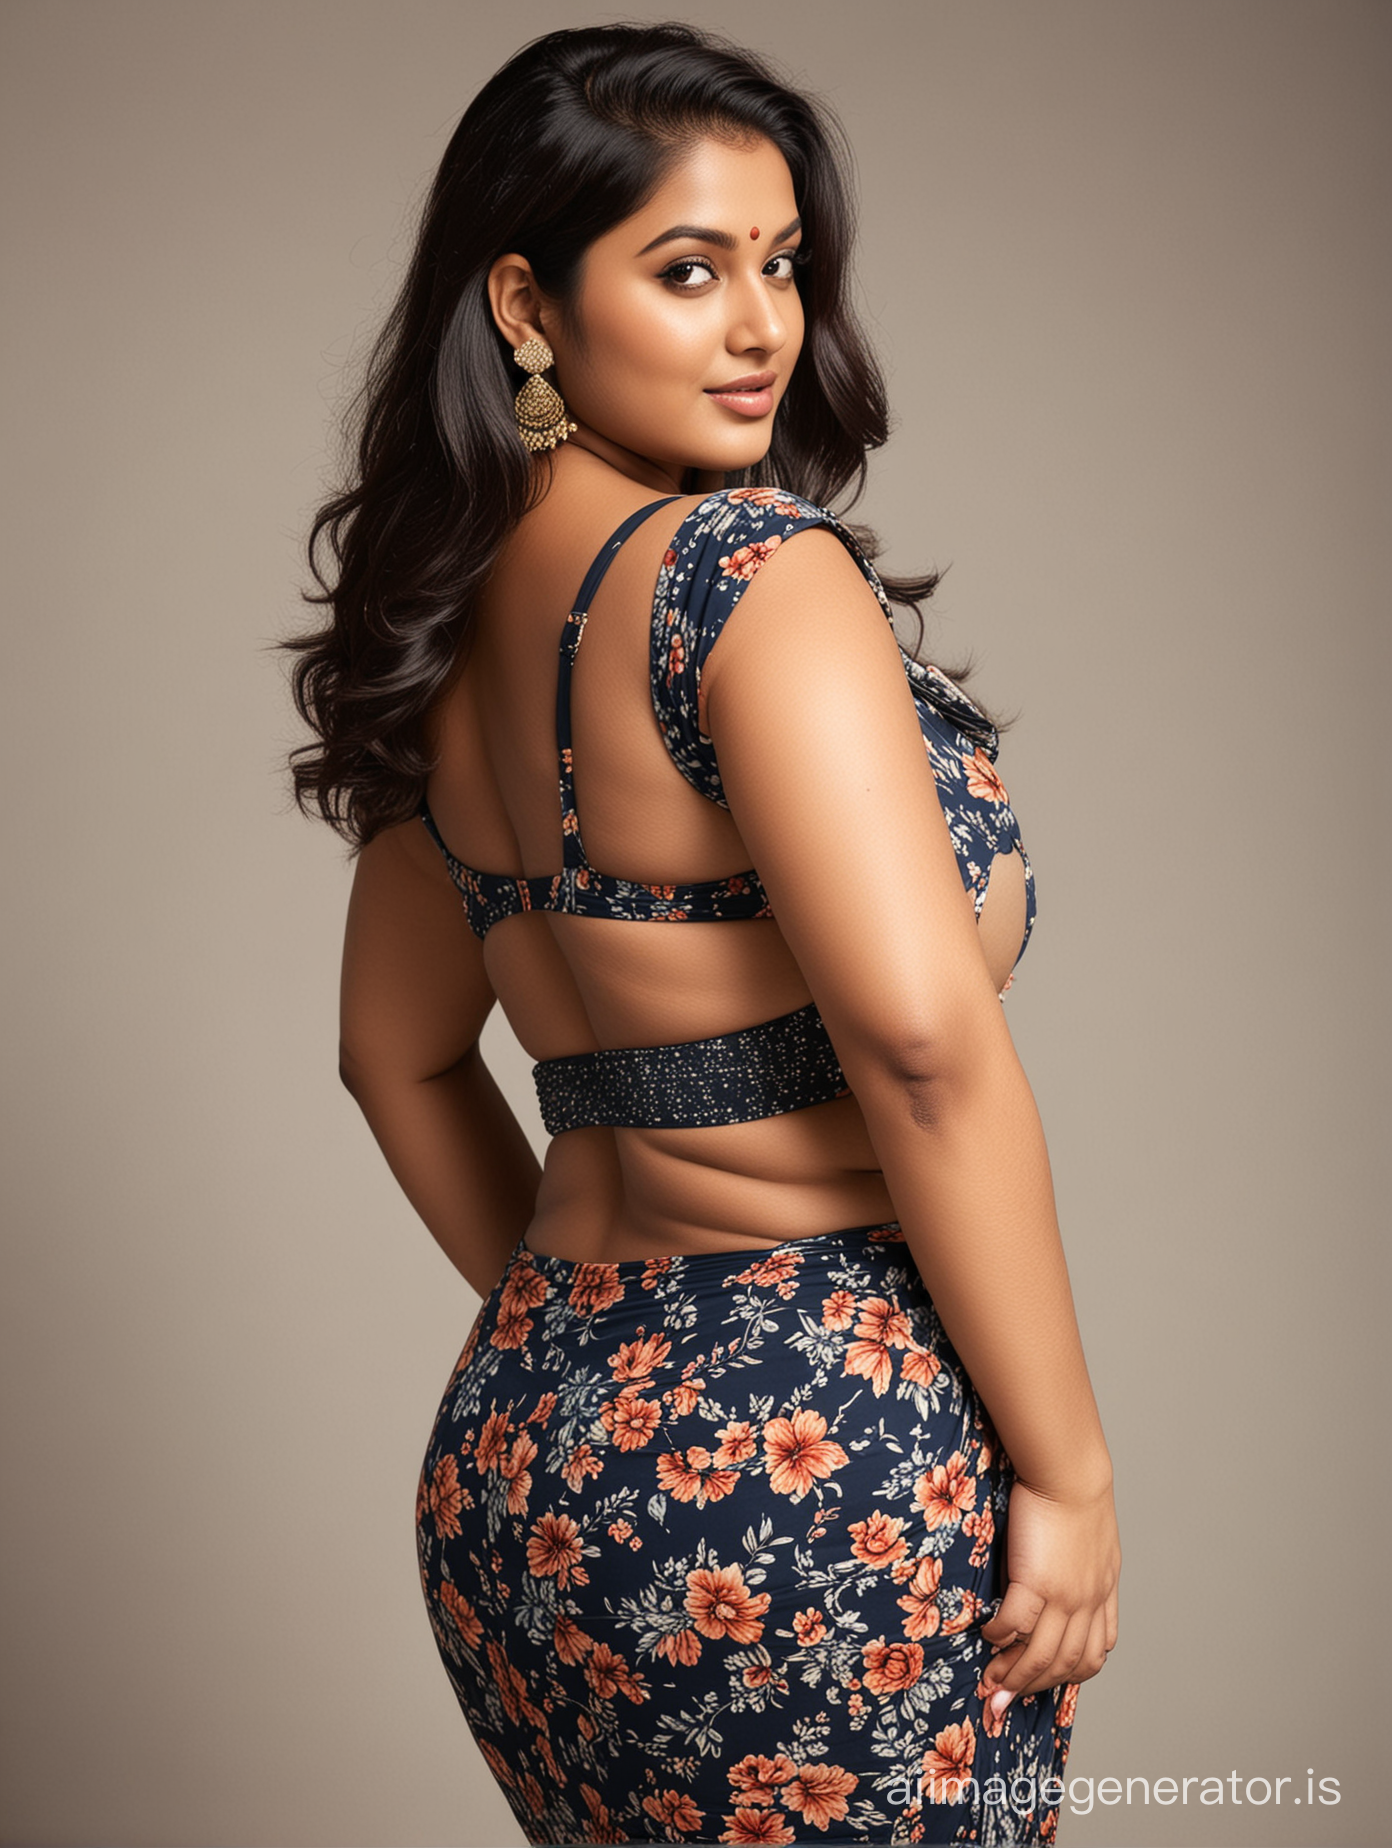 Beautiful indian plus size women show her back